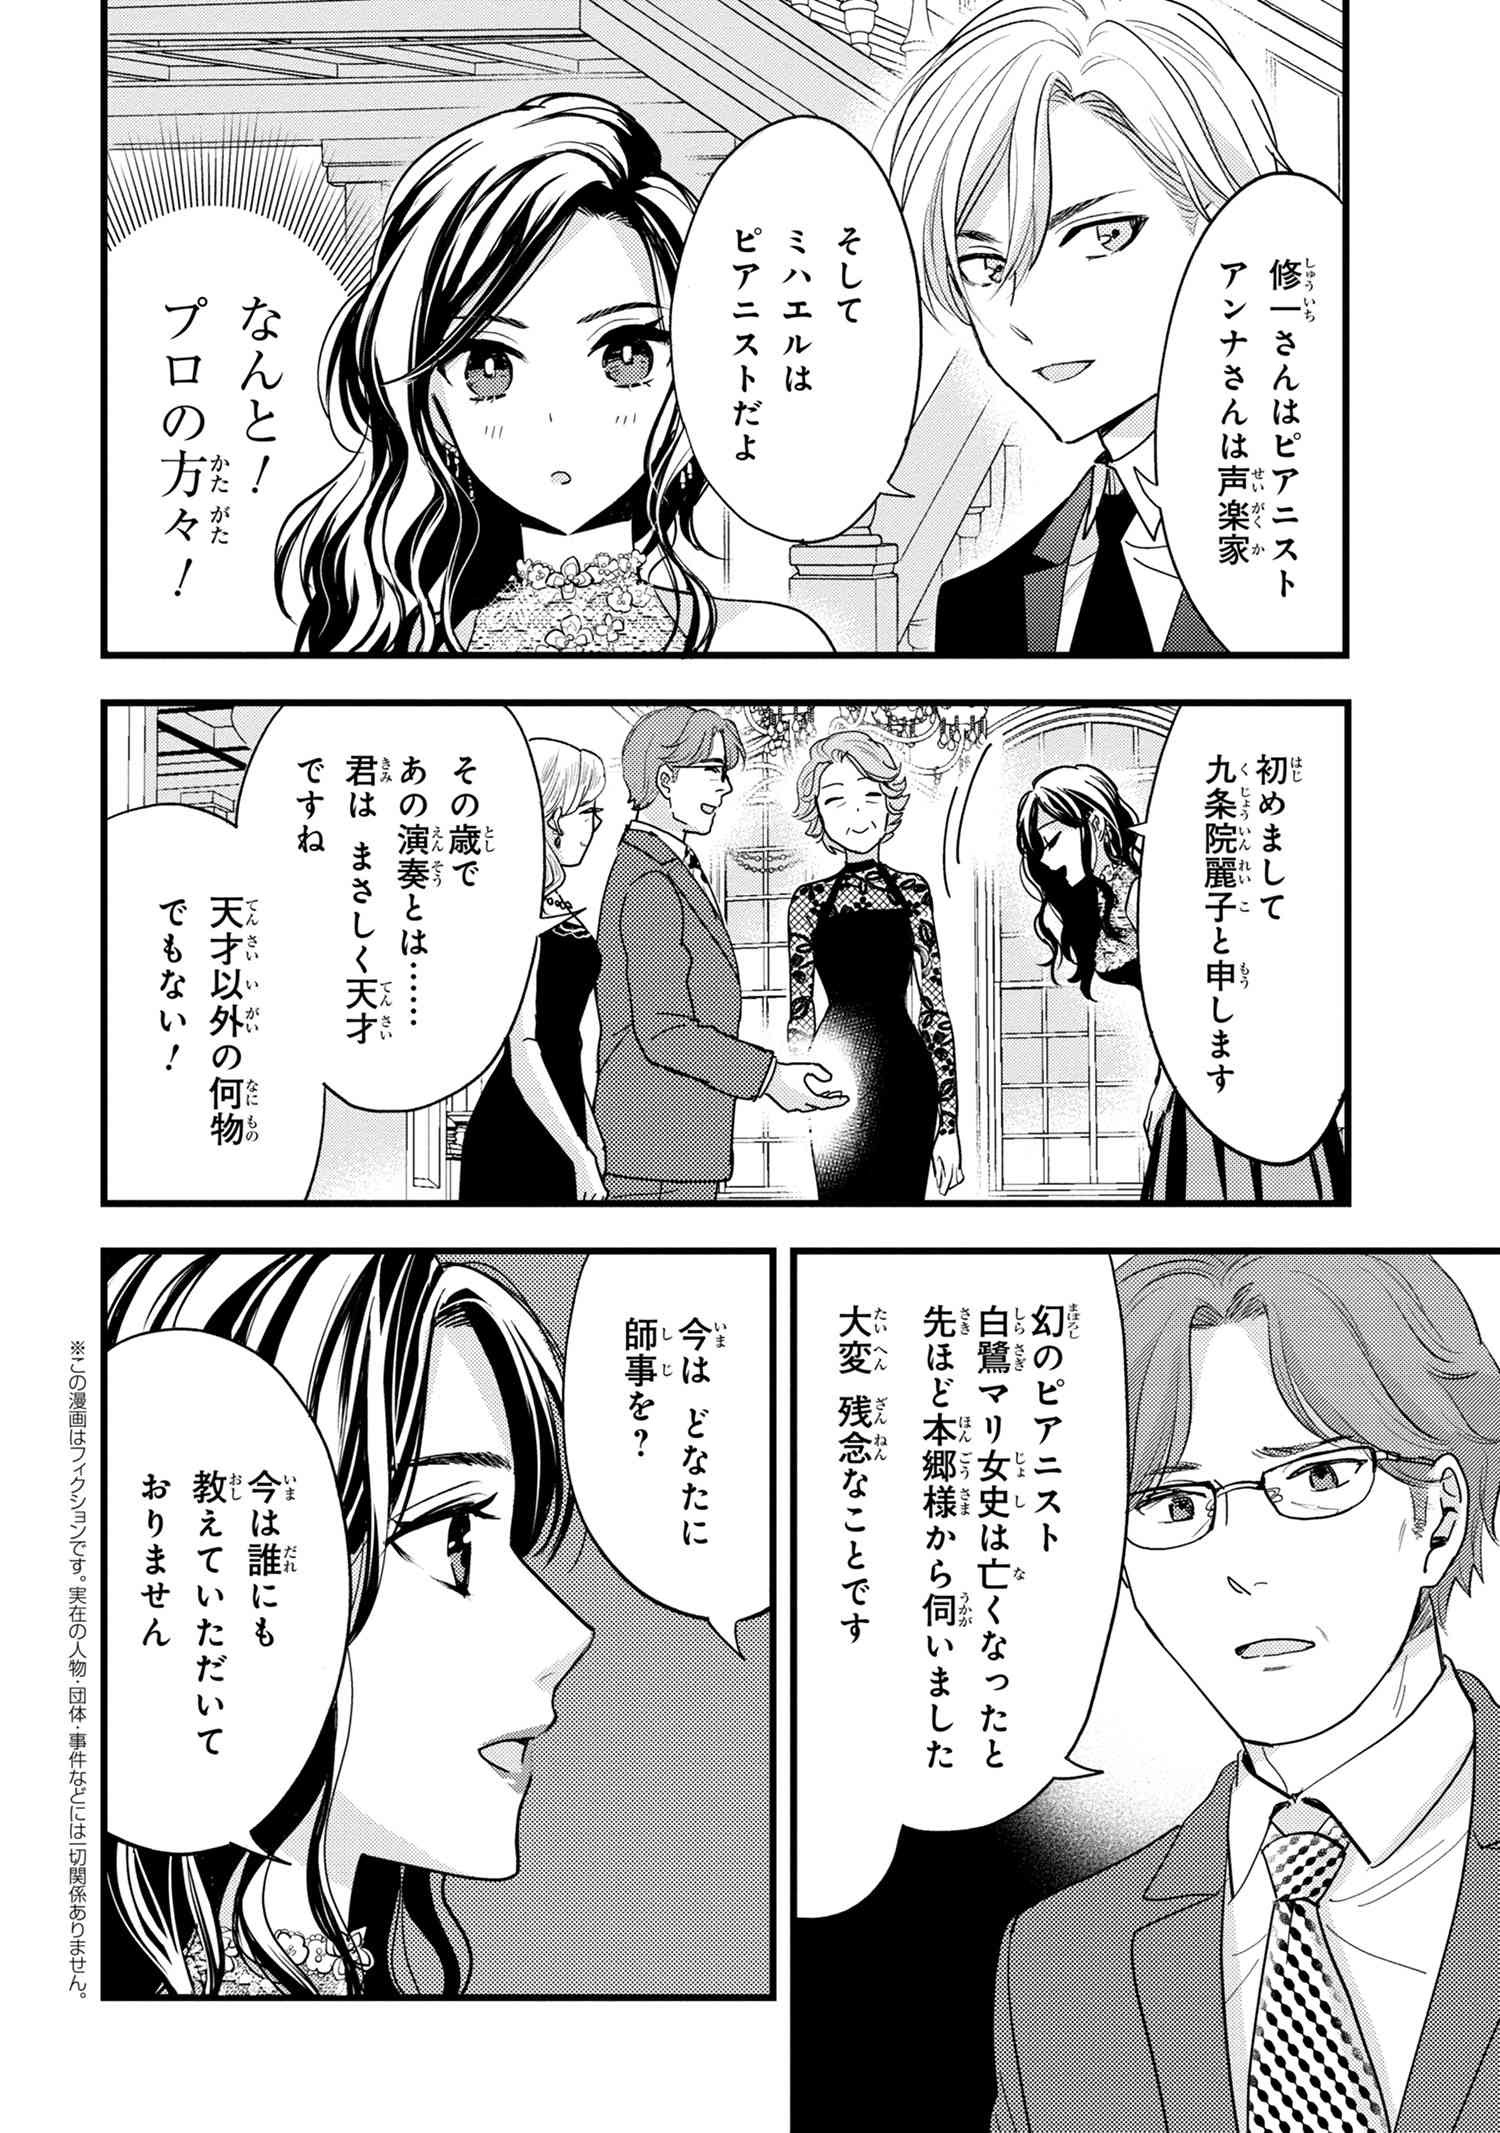 Reiko no Fuugi Akuyaku Reijou to Yobarete imasu ga, tada no Binbou Musume desu - Chapter 14-3 - Page 1